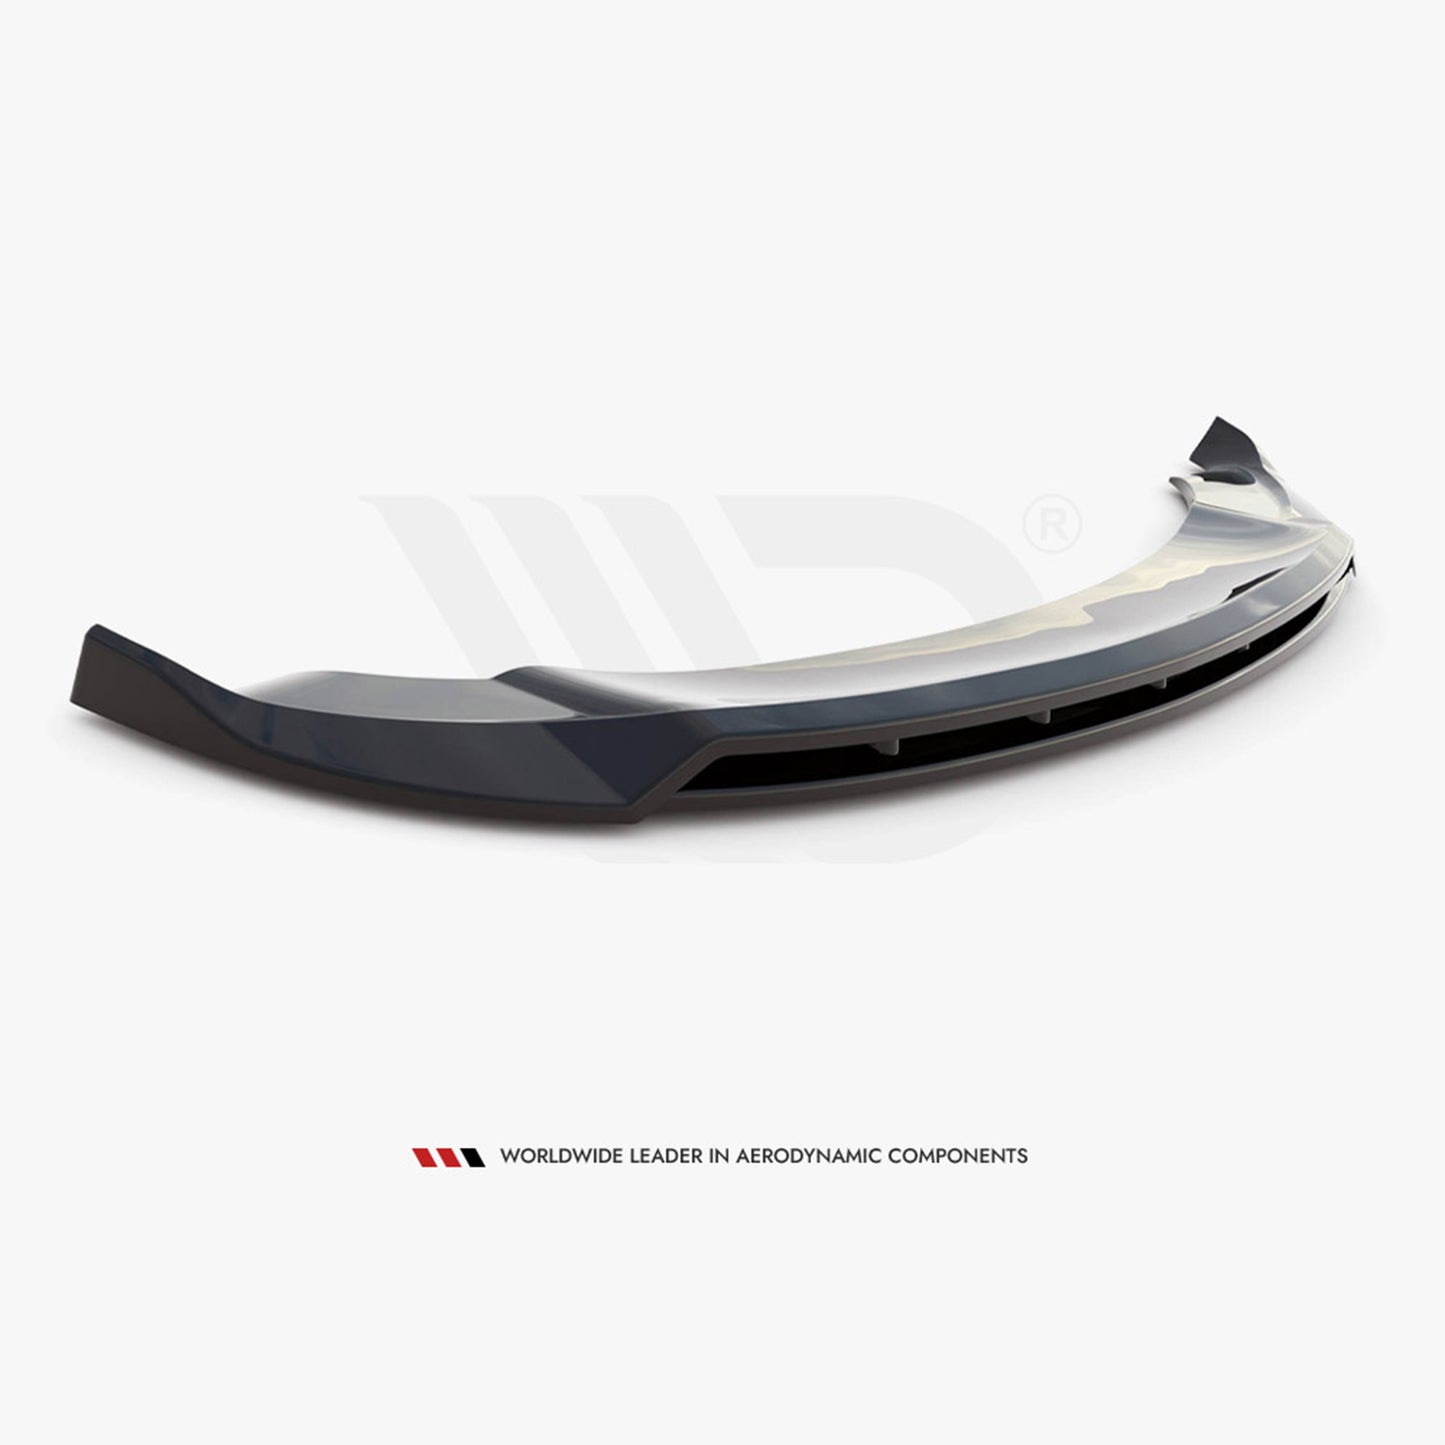 MAXTON® DESIGN Front Splitter / Version 2 for Tesla Model Y